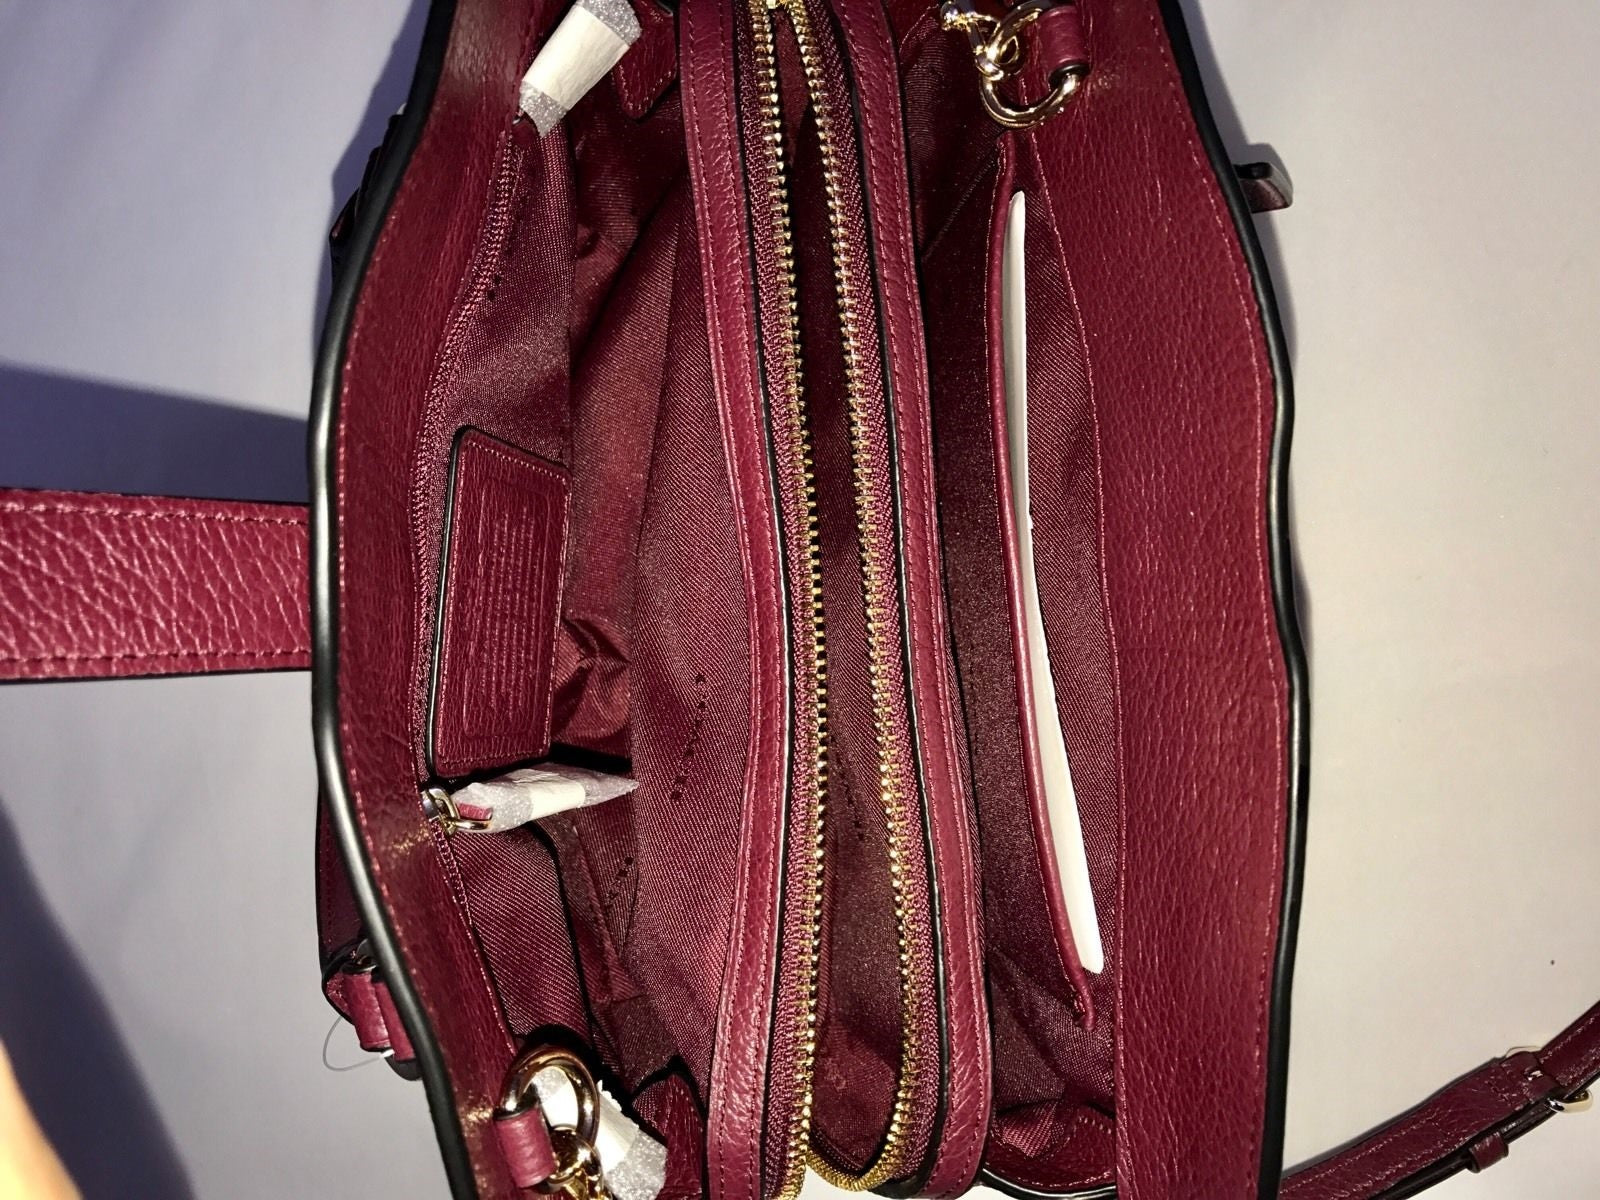 Кожаная сумка бордового цвета COACH Willow с цветочным принтом Mercer и 24 заклепками NWT $398